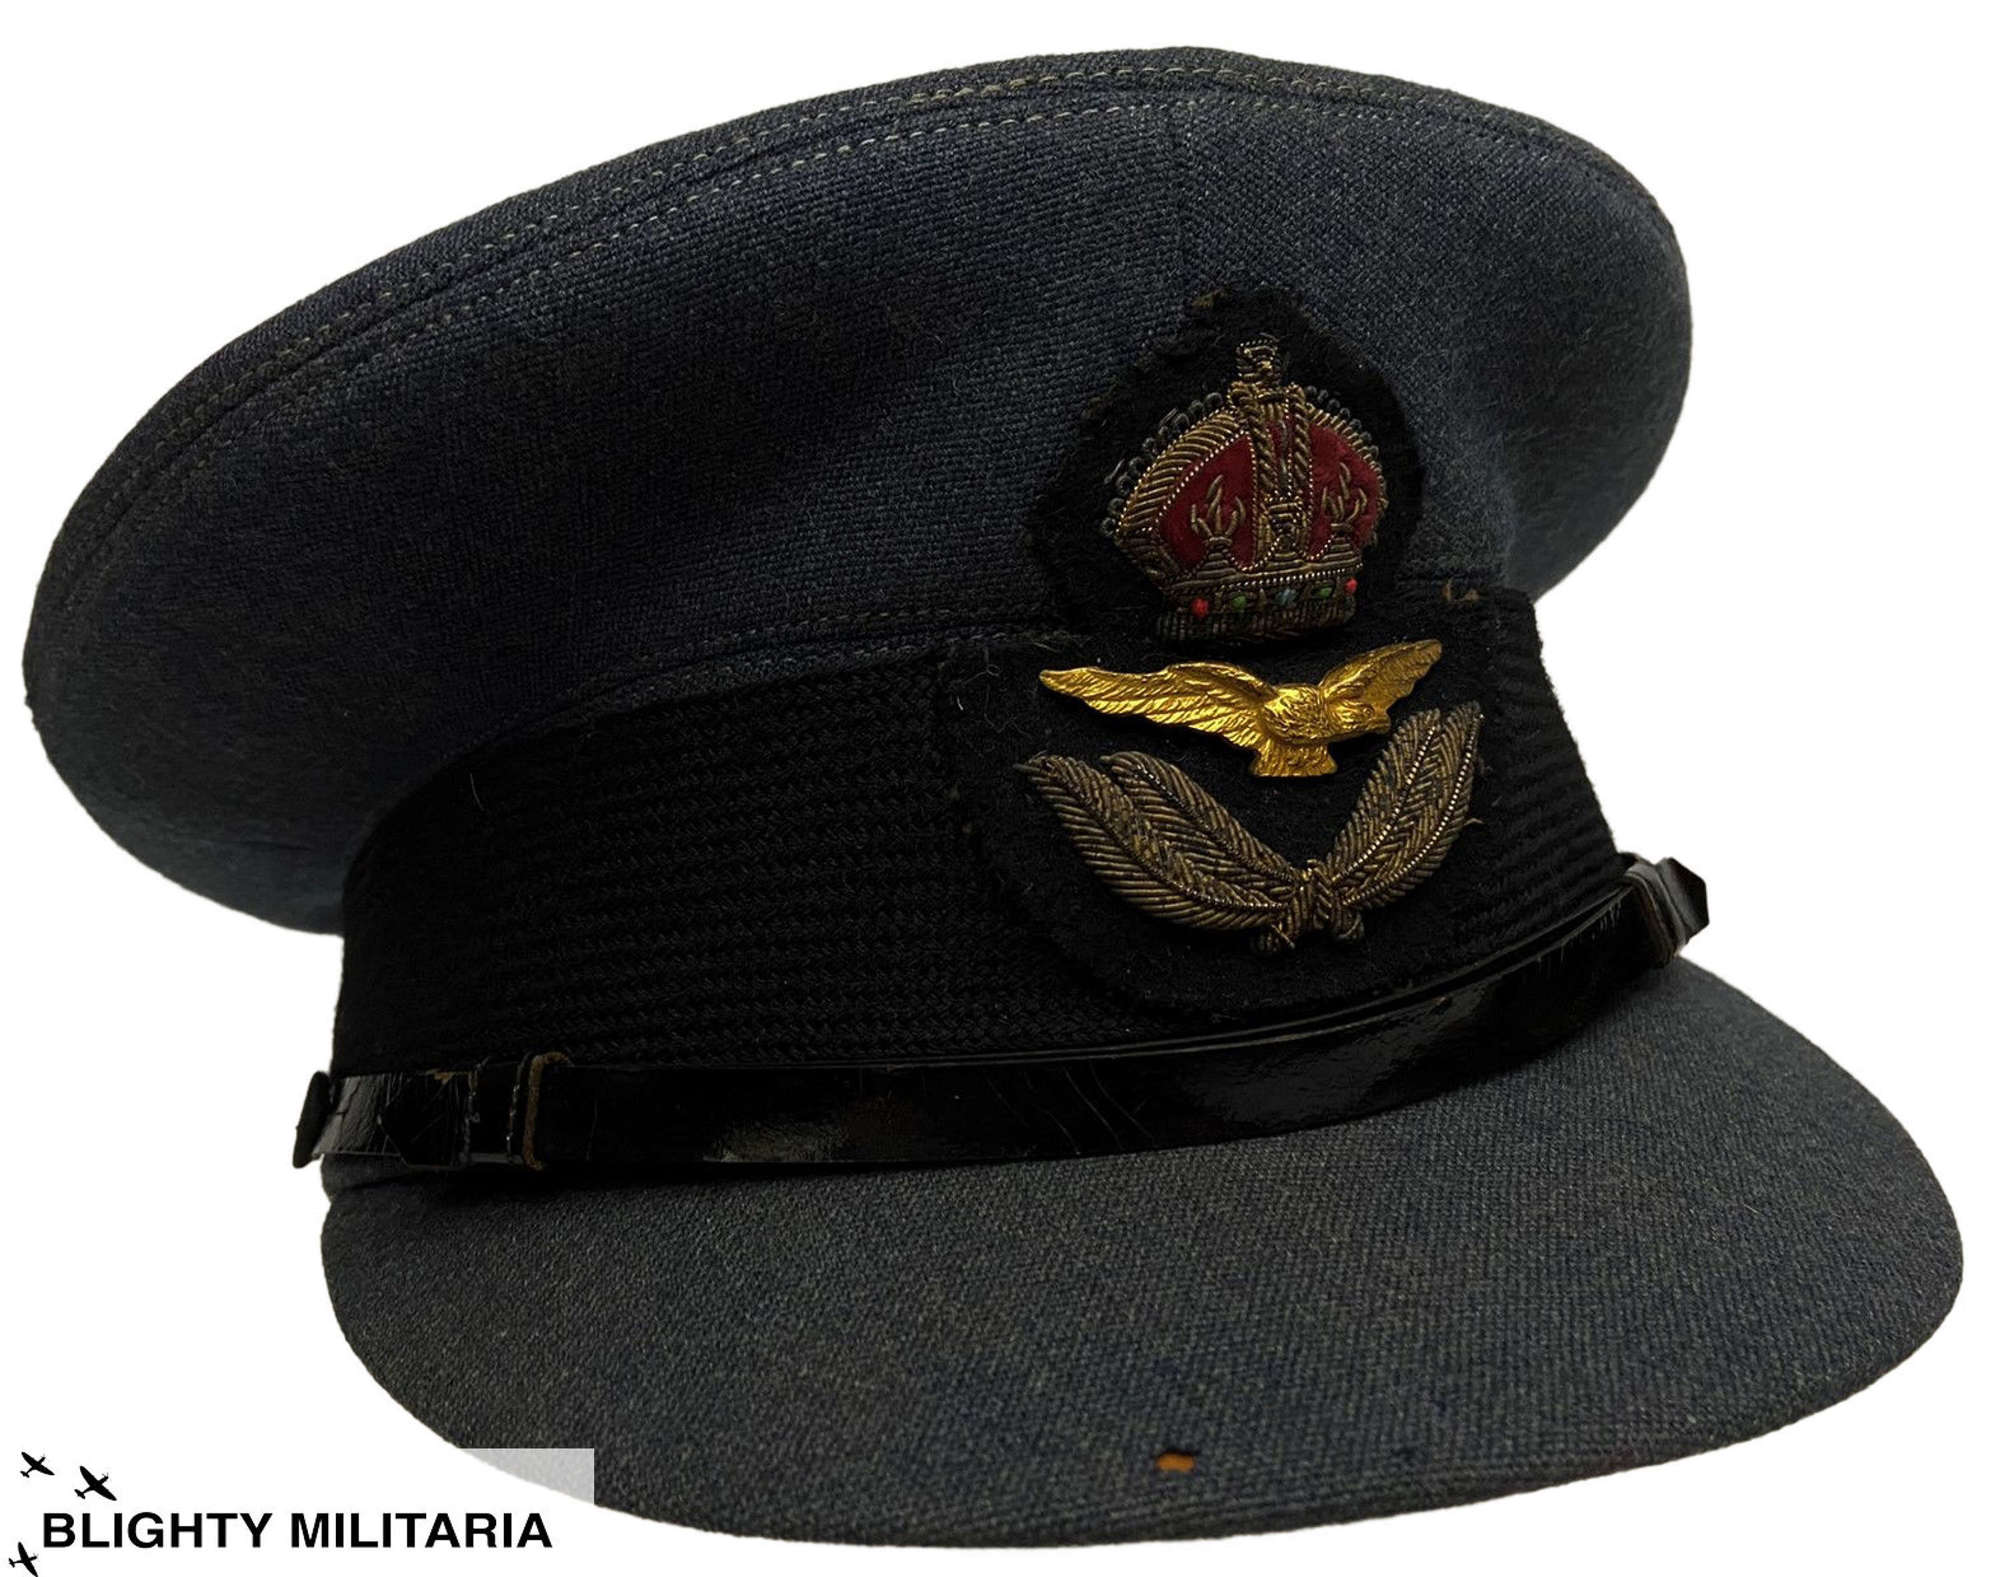 Original RAF Officers Peaked Cap by 'Burberry'